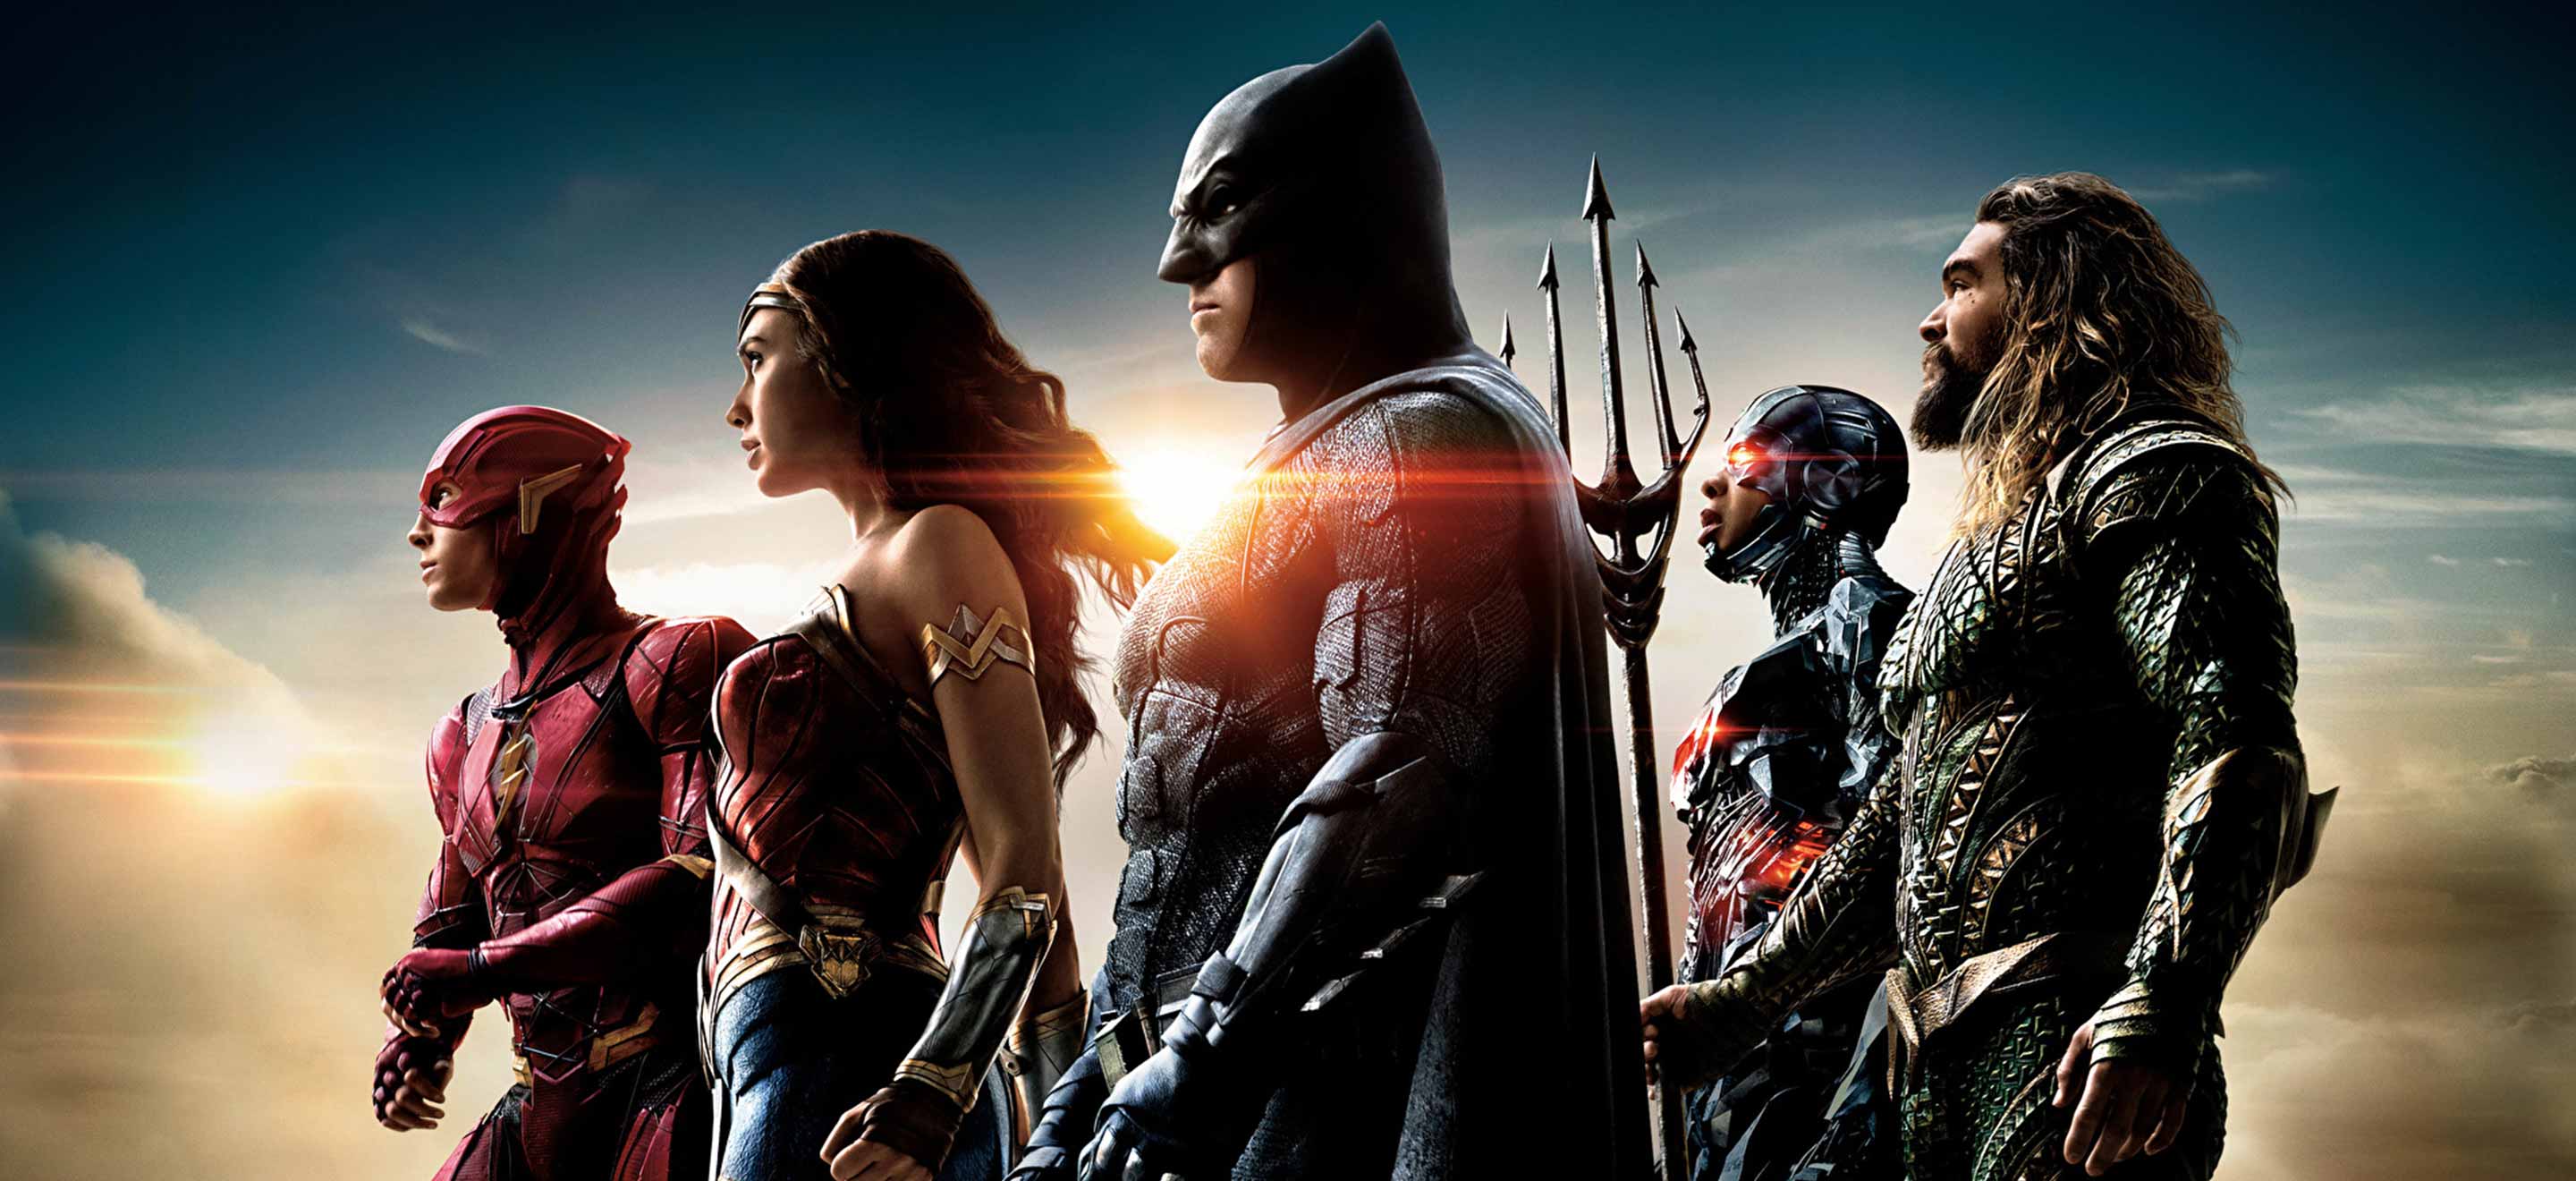 Ce qu'on veut voir réparé par le Justice League de Zack Snyder